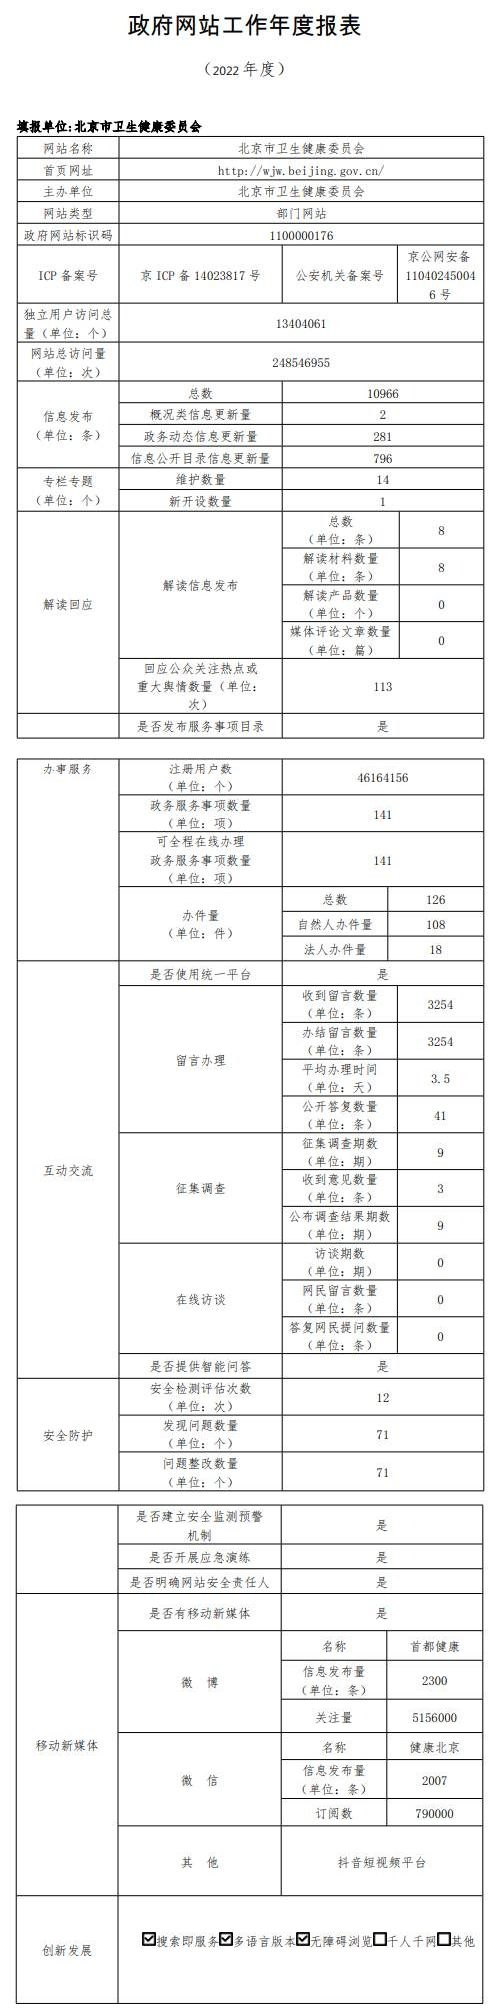 北京市卫生健康委员会2022年政府网站年度工作报表